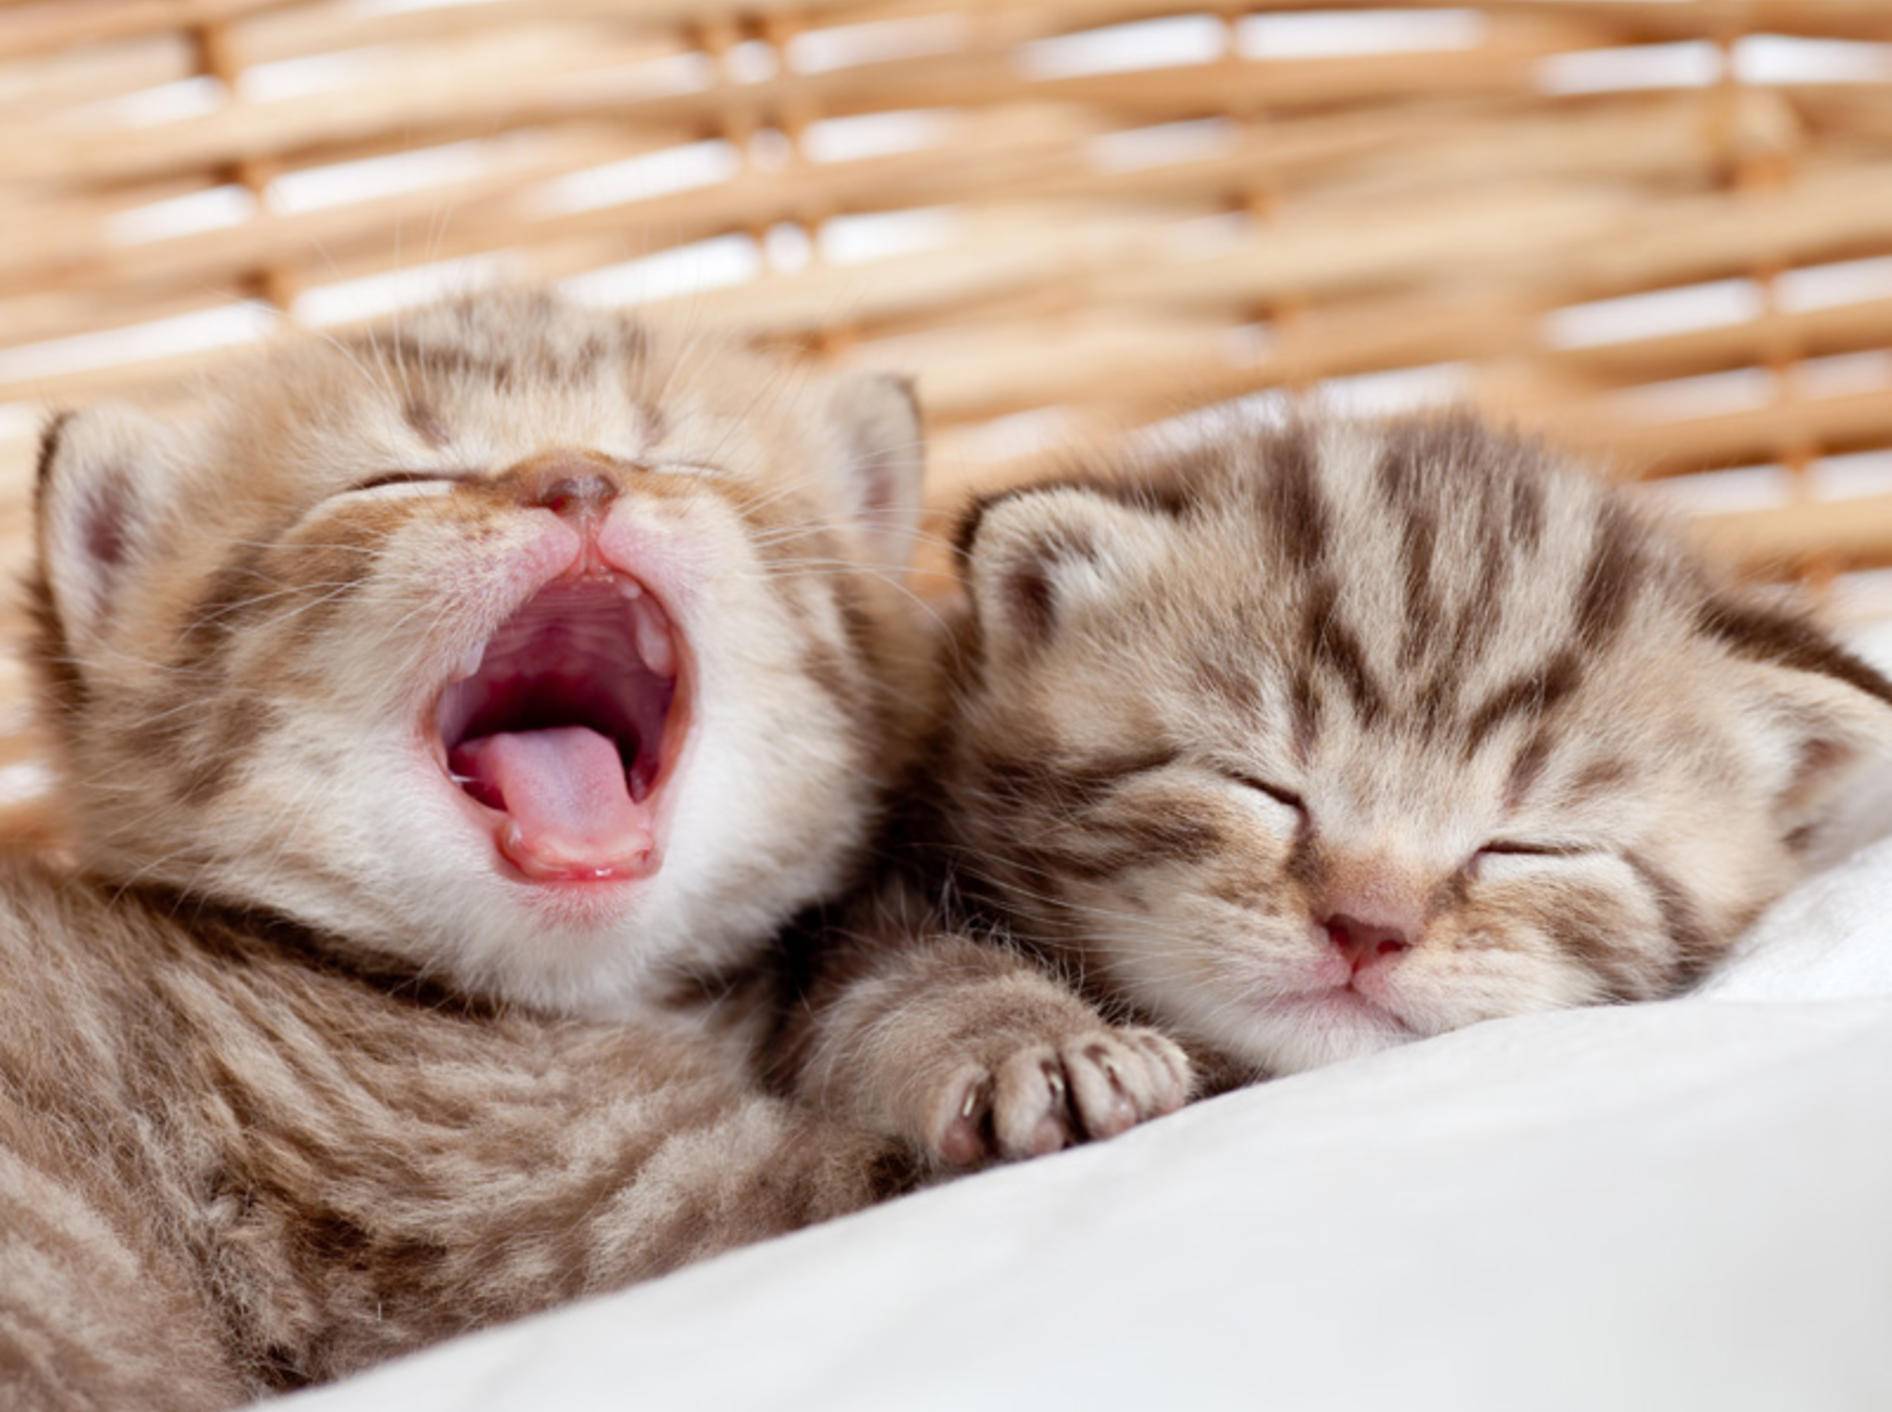 Katzenbabys von Hauskatzen gibt es beispielsweise im Tierheim – Bild: Shutterstock / Oksana Kuzmina